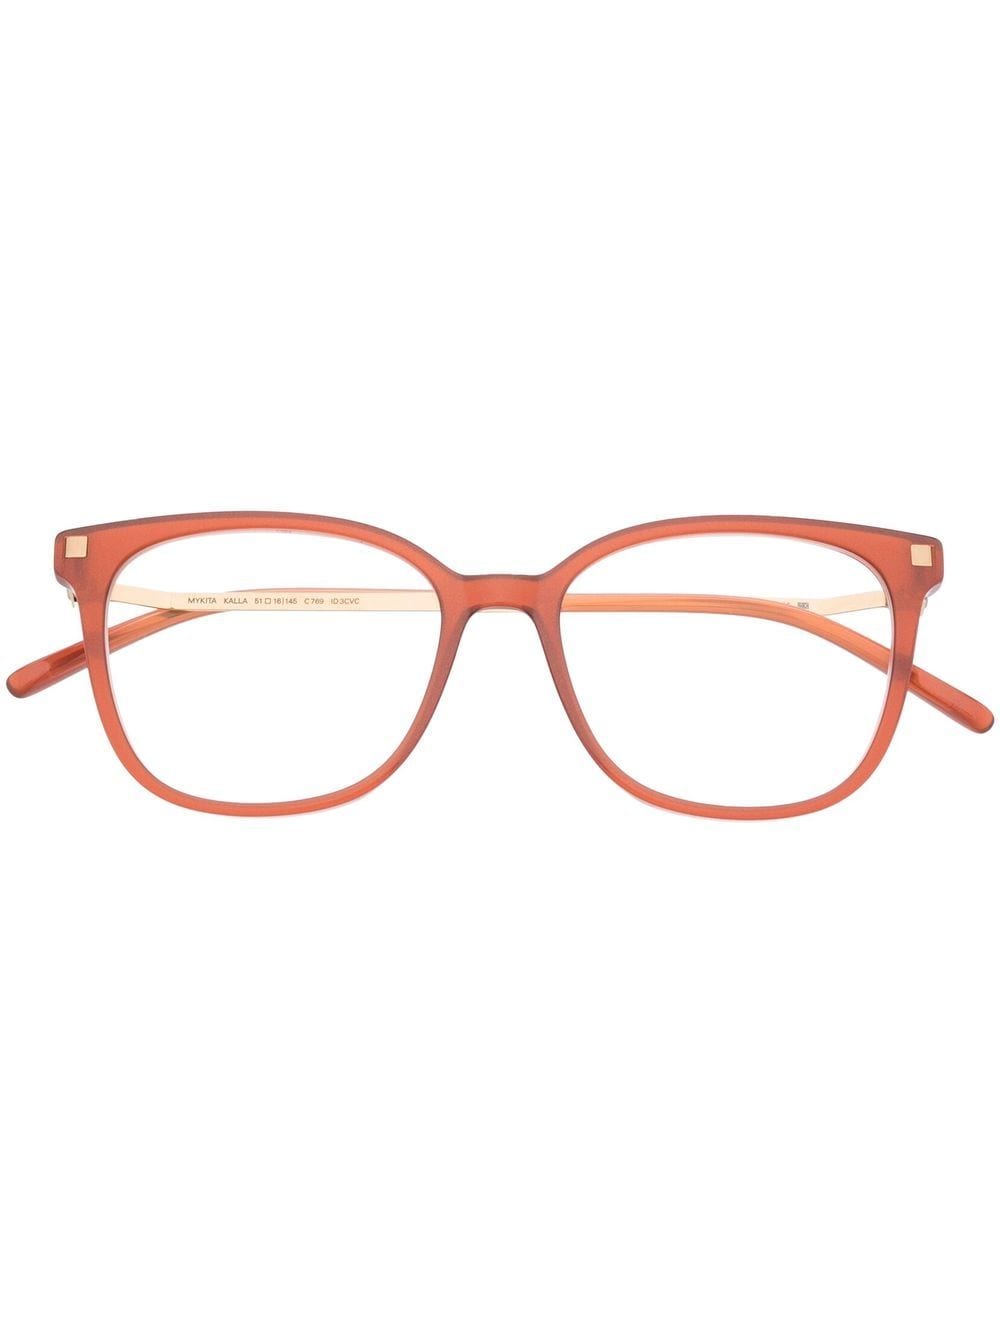 Mykita Kalla 769 squared frame glasses - Orange von Mykita